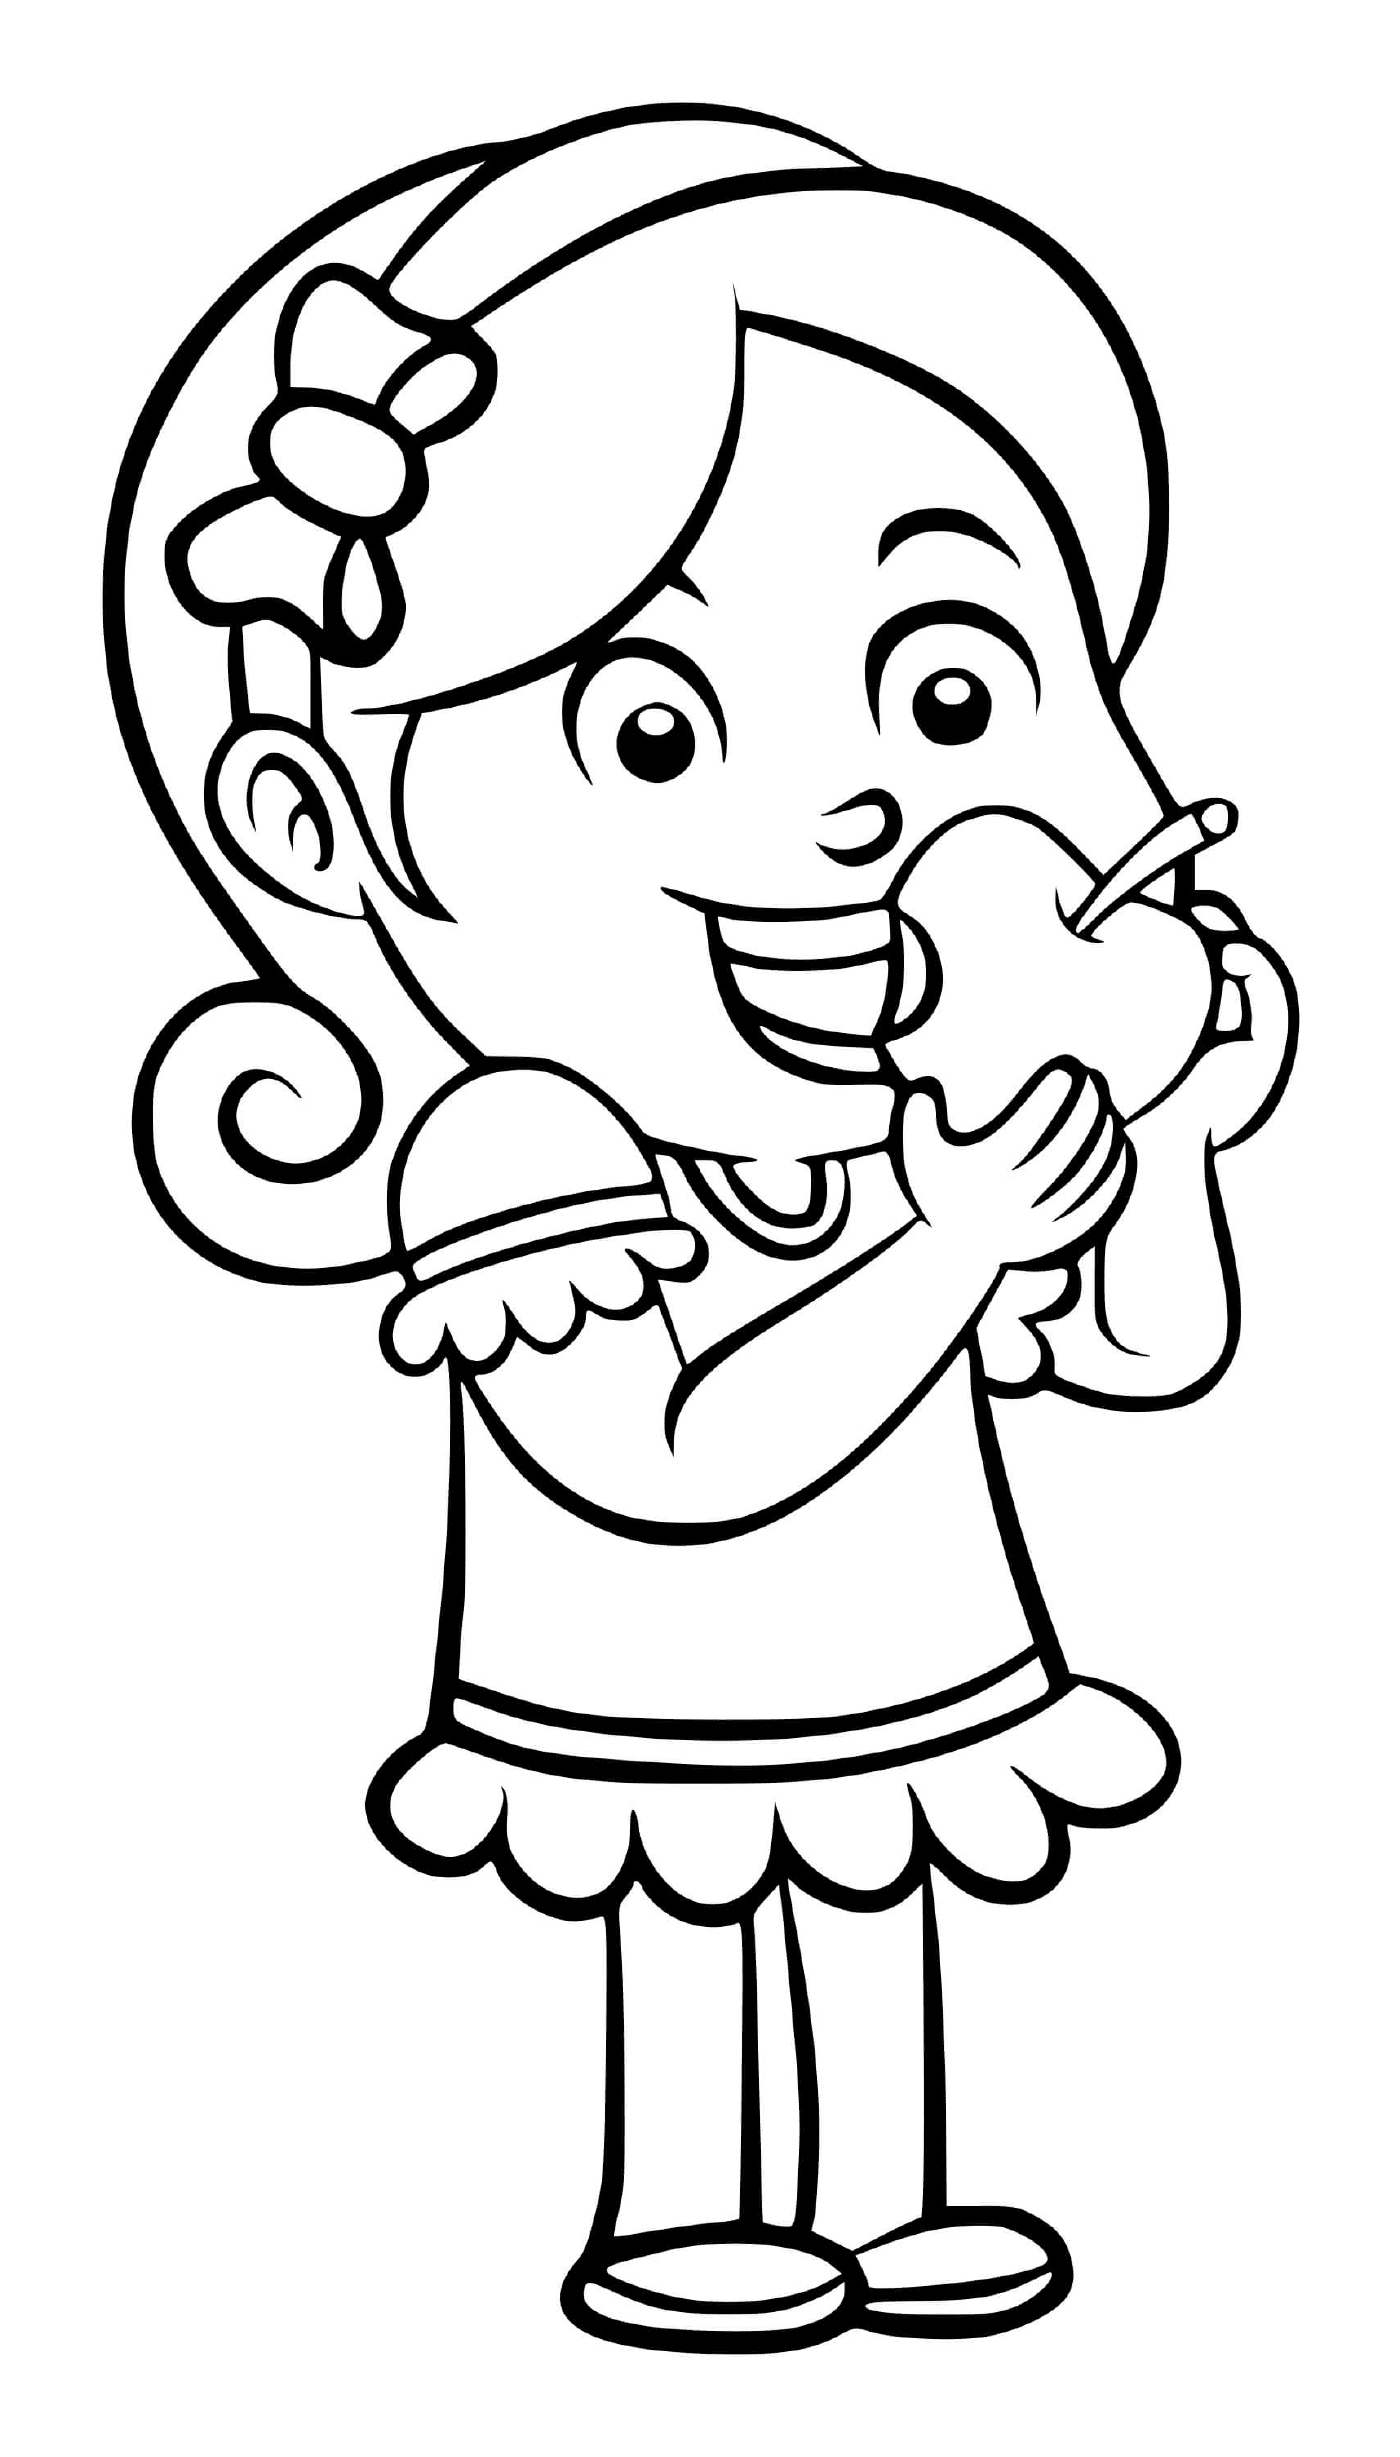  एक लड़की अपने ब्रेक के दौरान सेब का स्वाद चखती है 